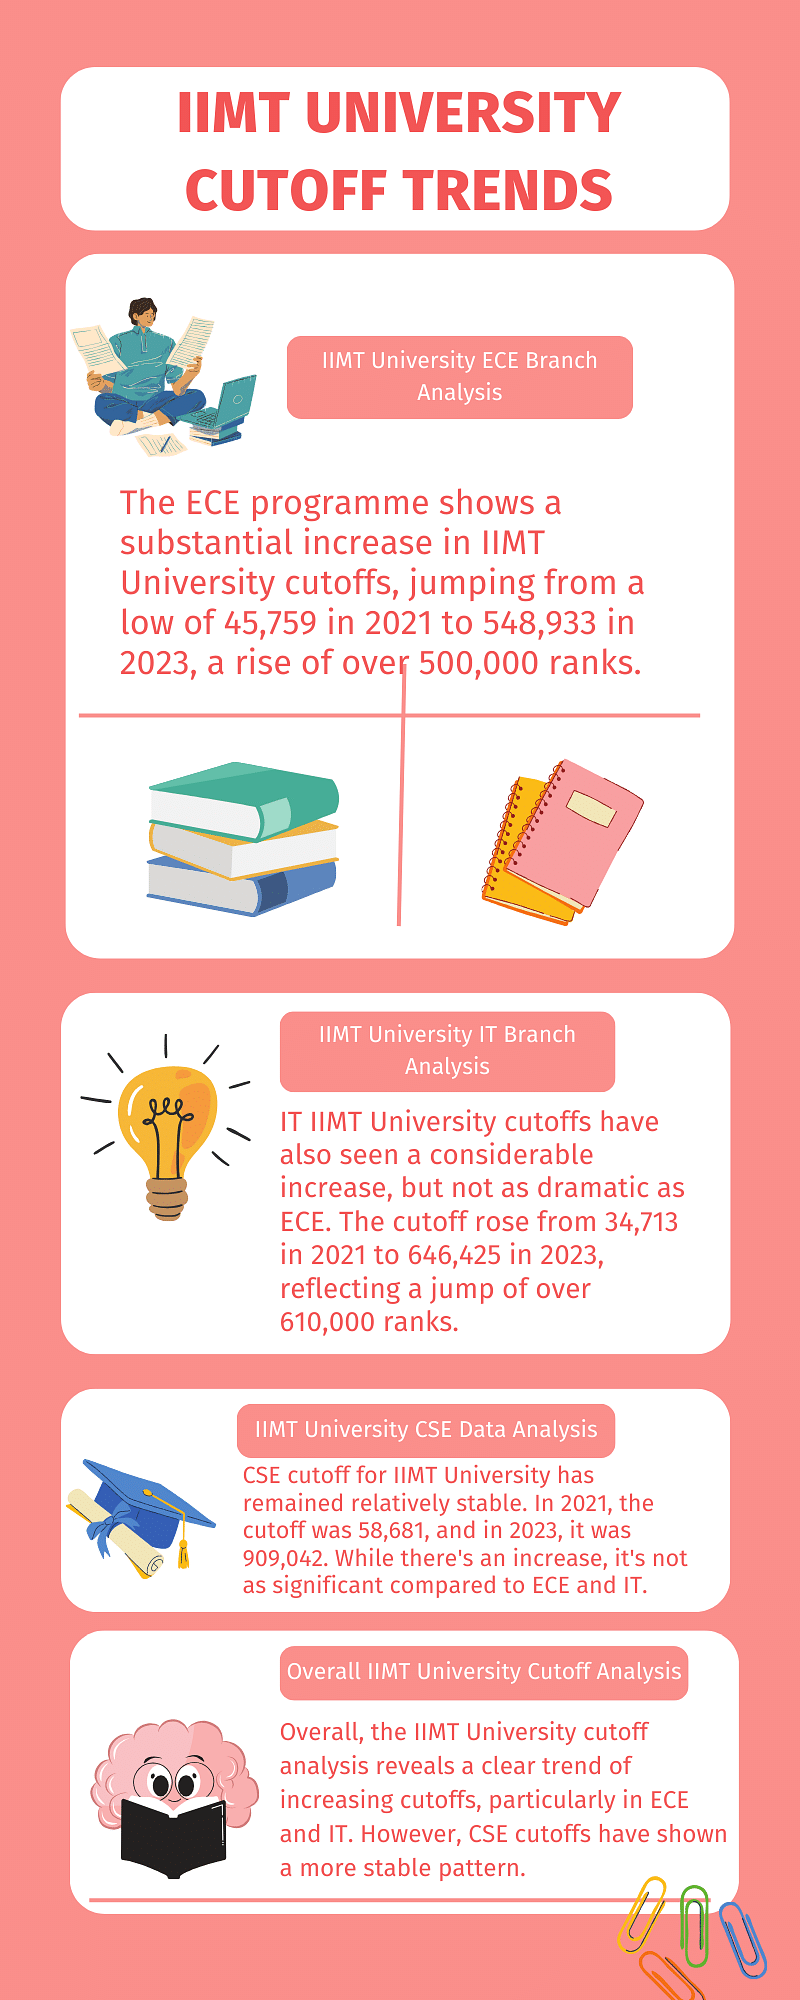 IIMT University Cutoff Trends